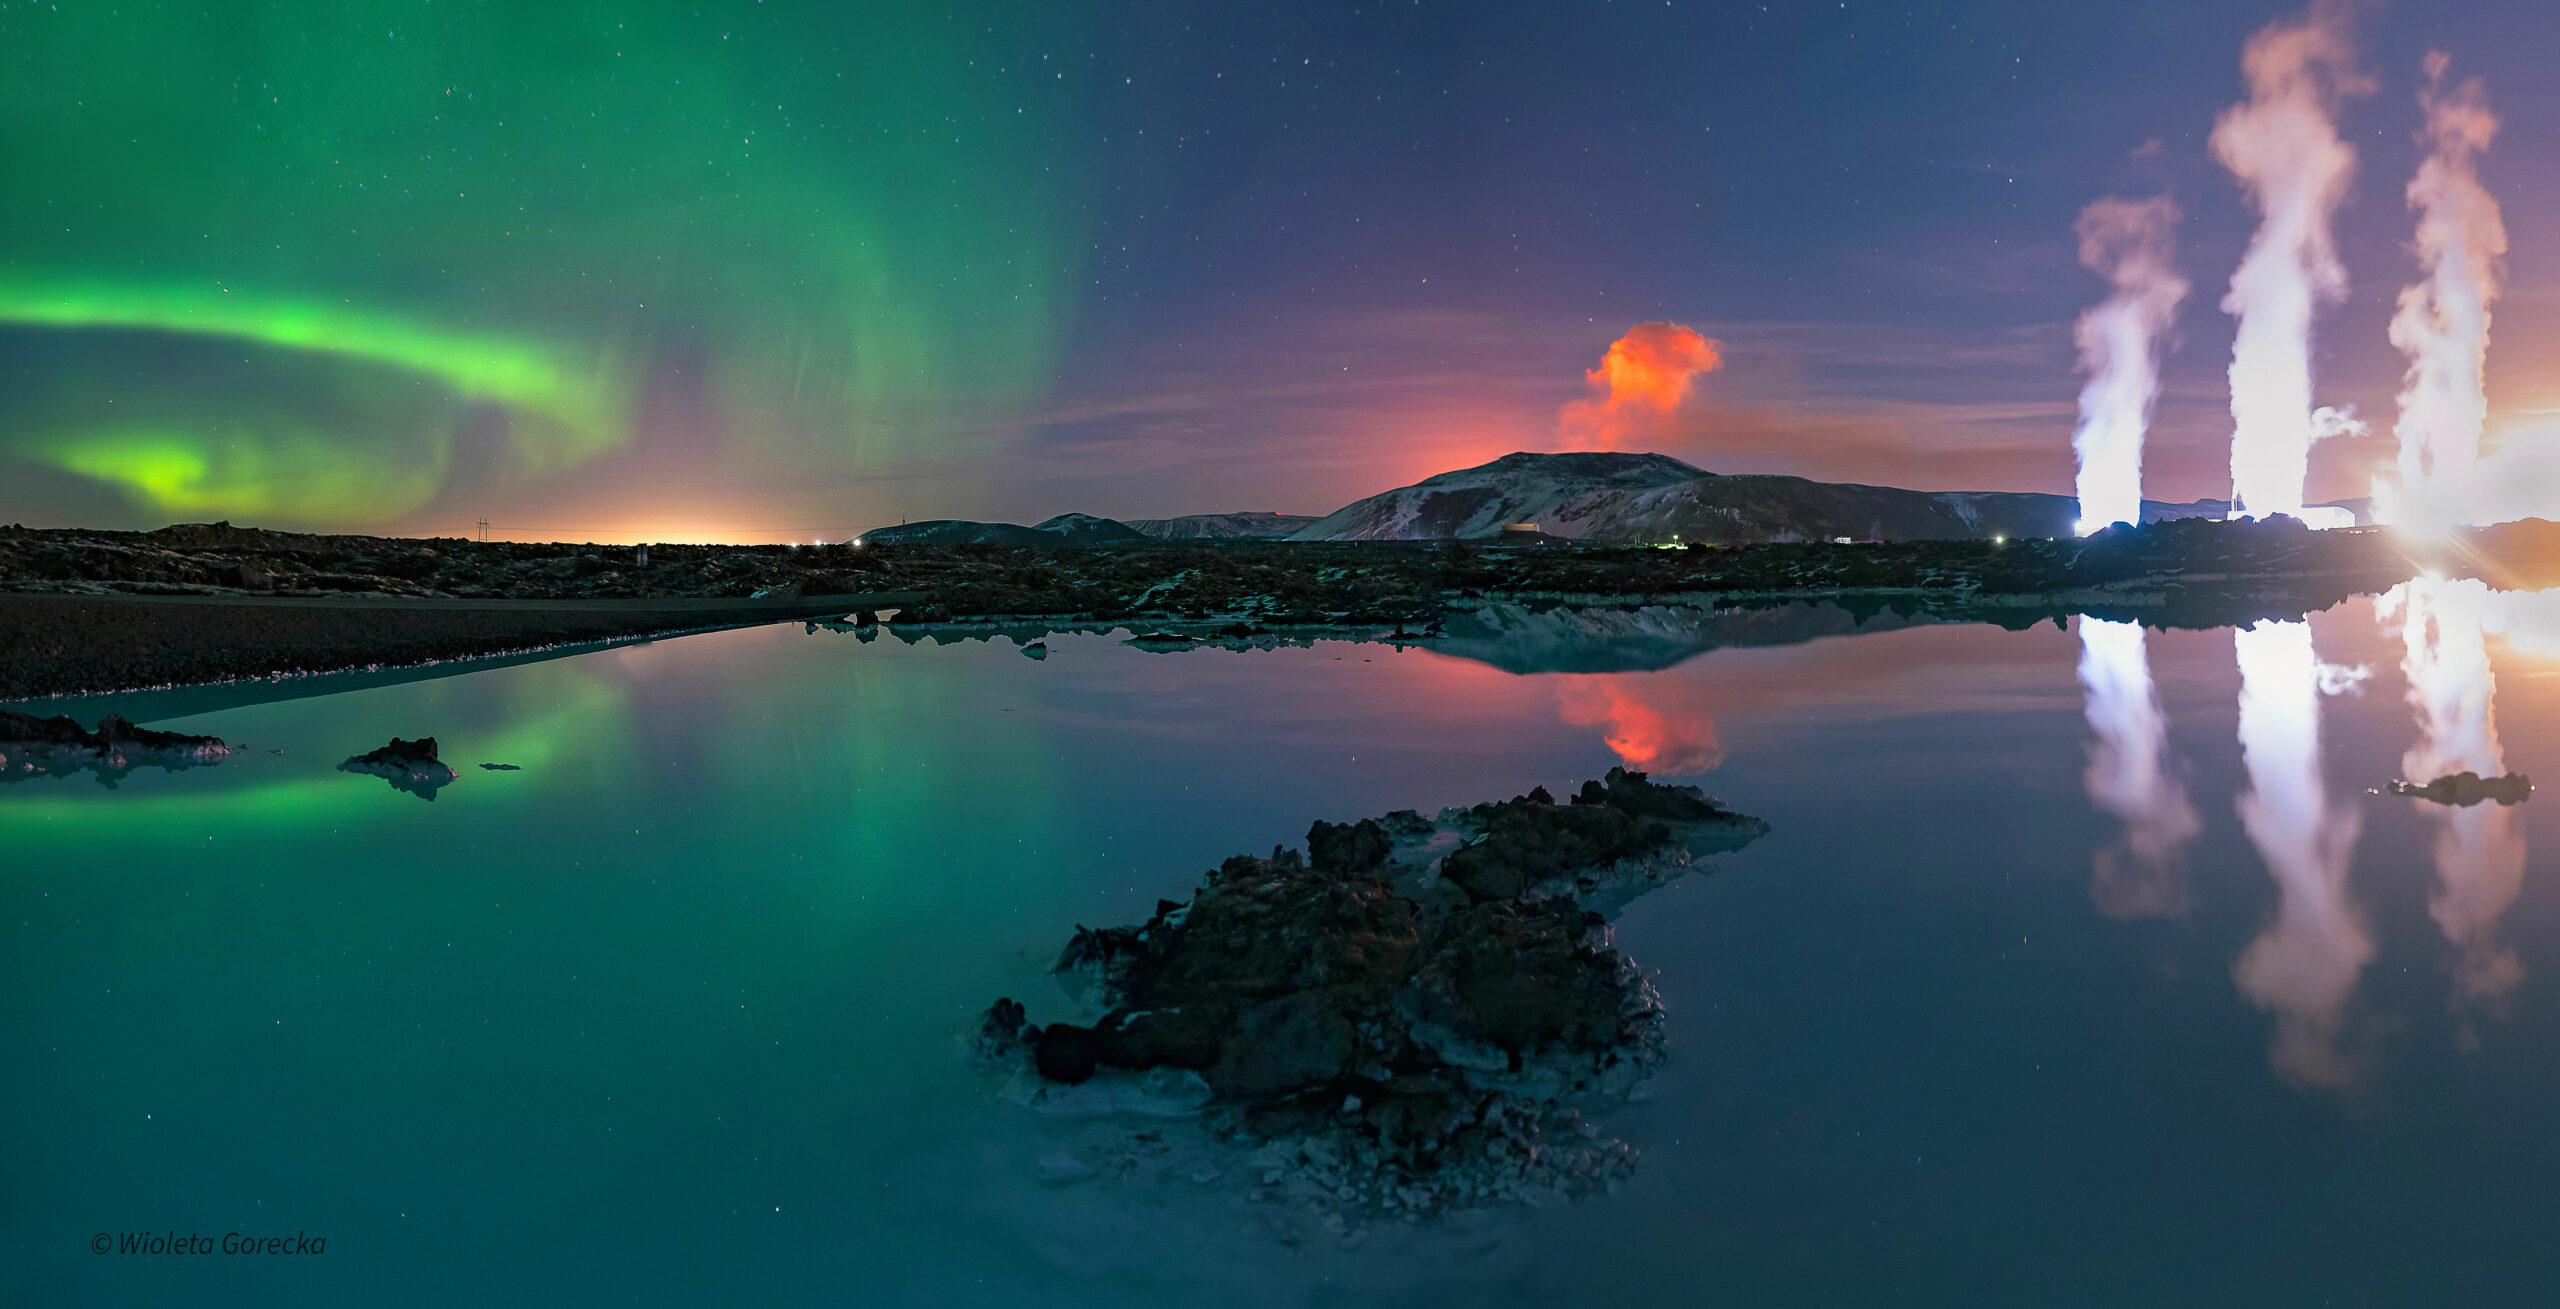 Impressionante: Vulcão entra em erupção durante Aurora Boreal na Islândia; veja vídeo